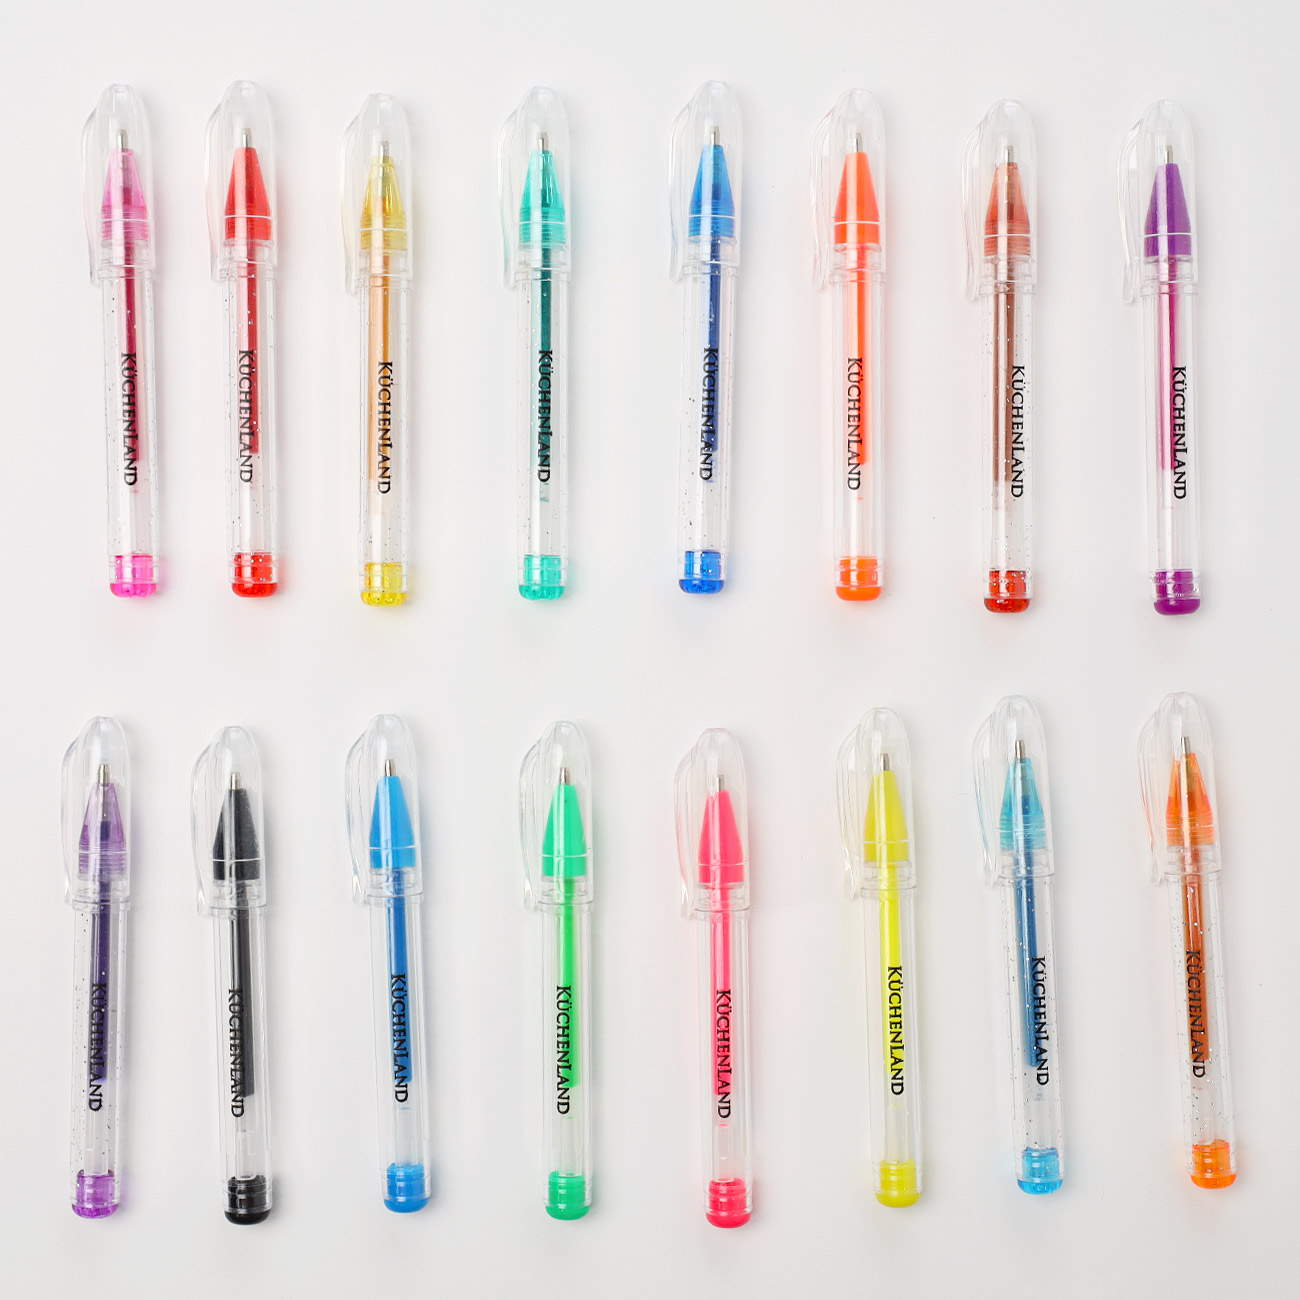 Set of gel pens, 16 pcs, plastic, colored, Little, Draw изображение № 2